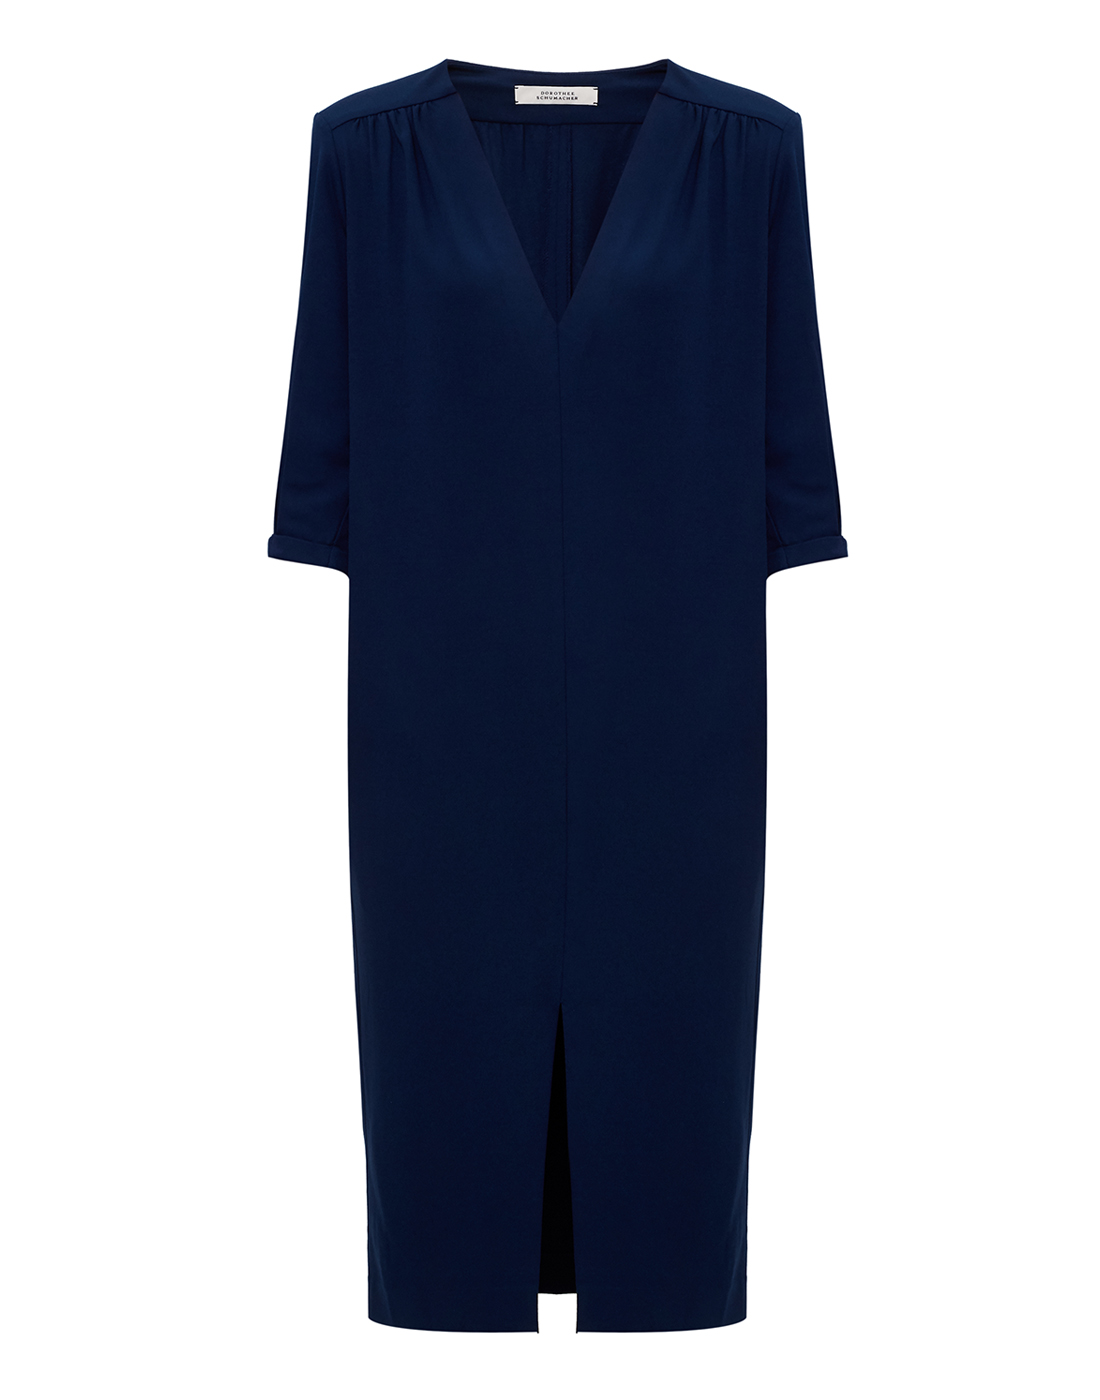 Женское темно-синее платье Dorothee Schumacher S826002/859-1